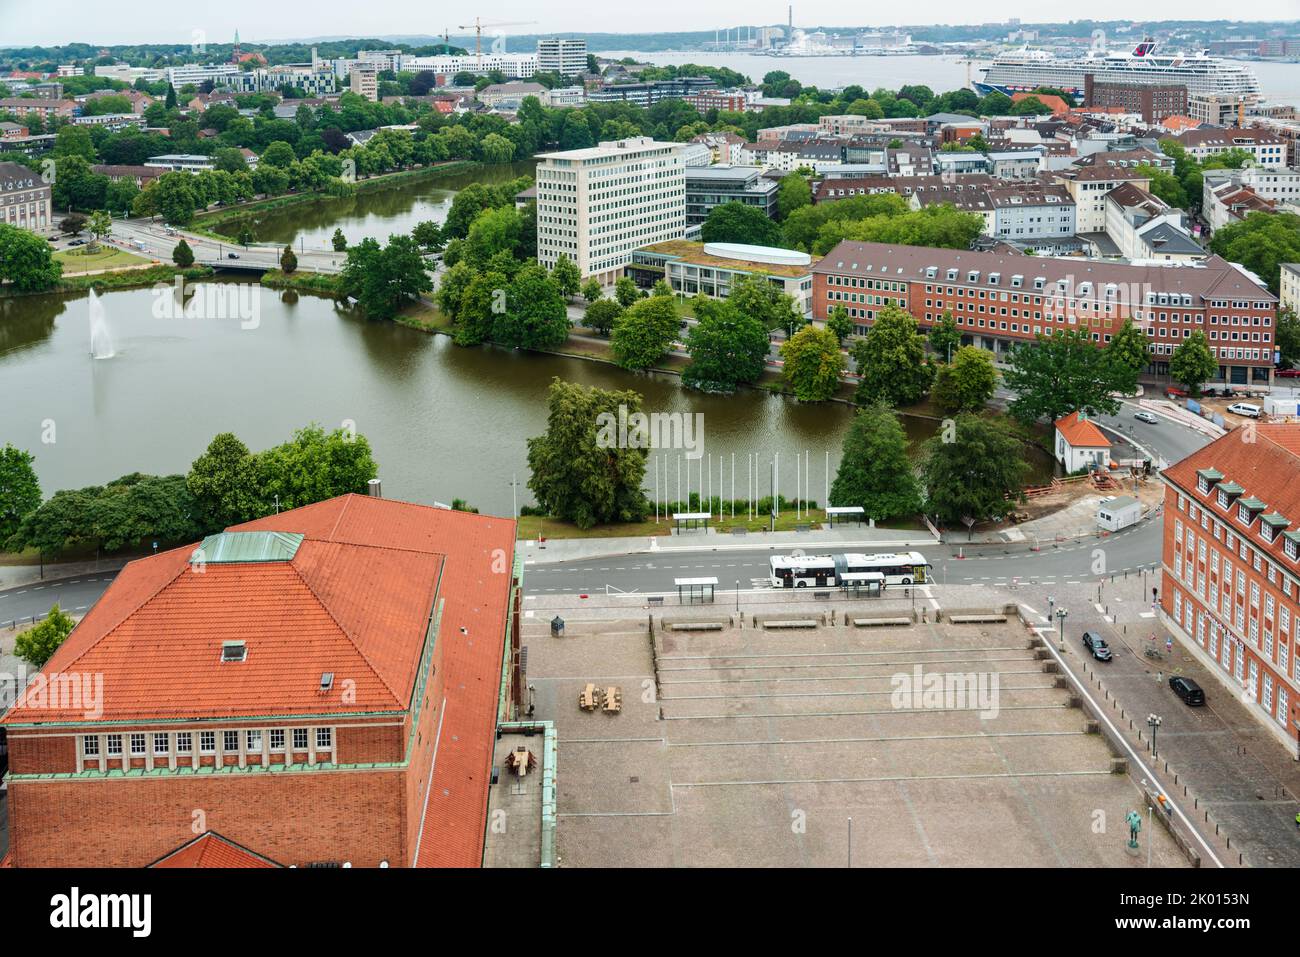 Kiel - Luftaufnahme Innenstadt Kiel und Hafen im Vordergrund der Rathausplatz und das Opernhaus am Kleinen Kiel Foto de stock